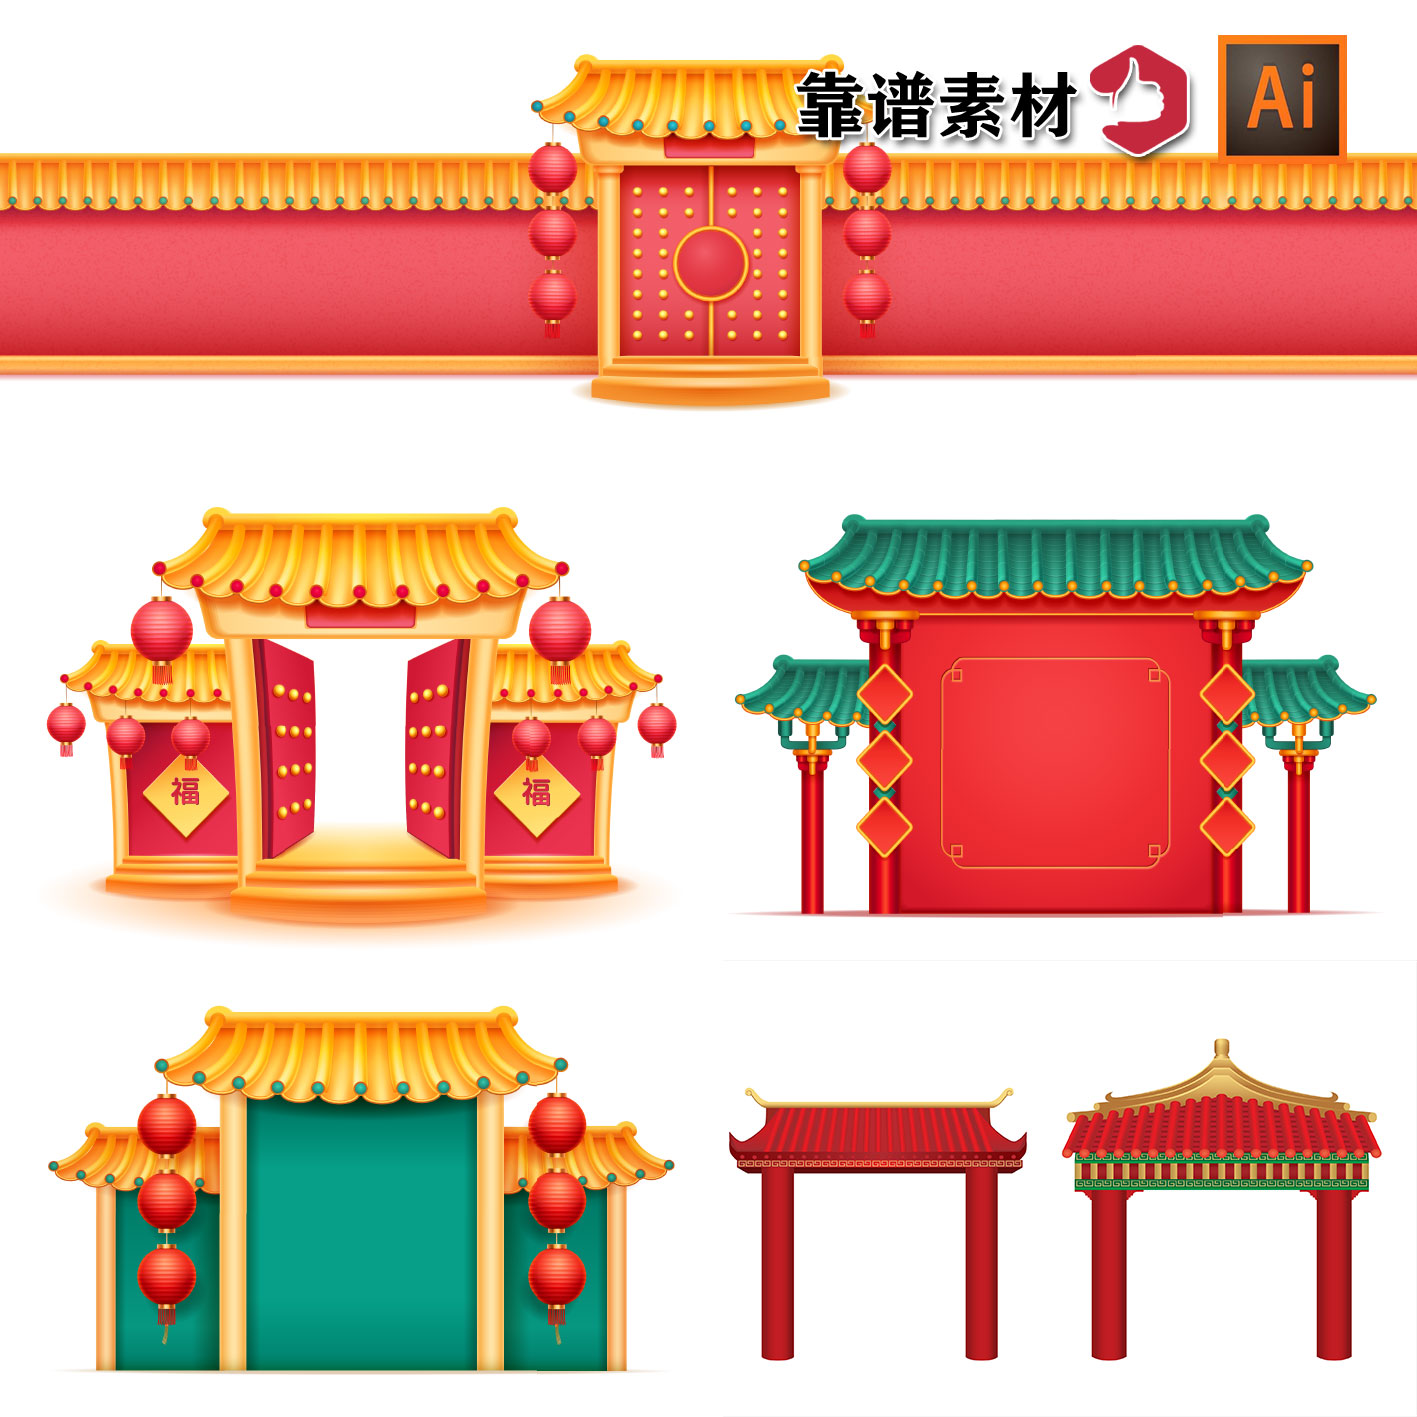 新年红色喜庆节日拱门大门背景AI矢量素材